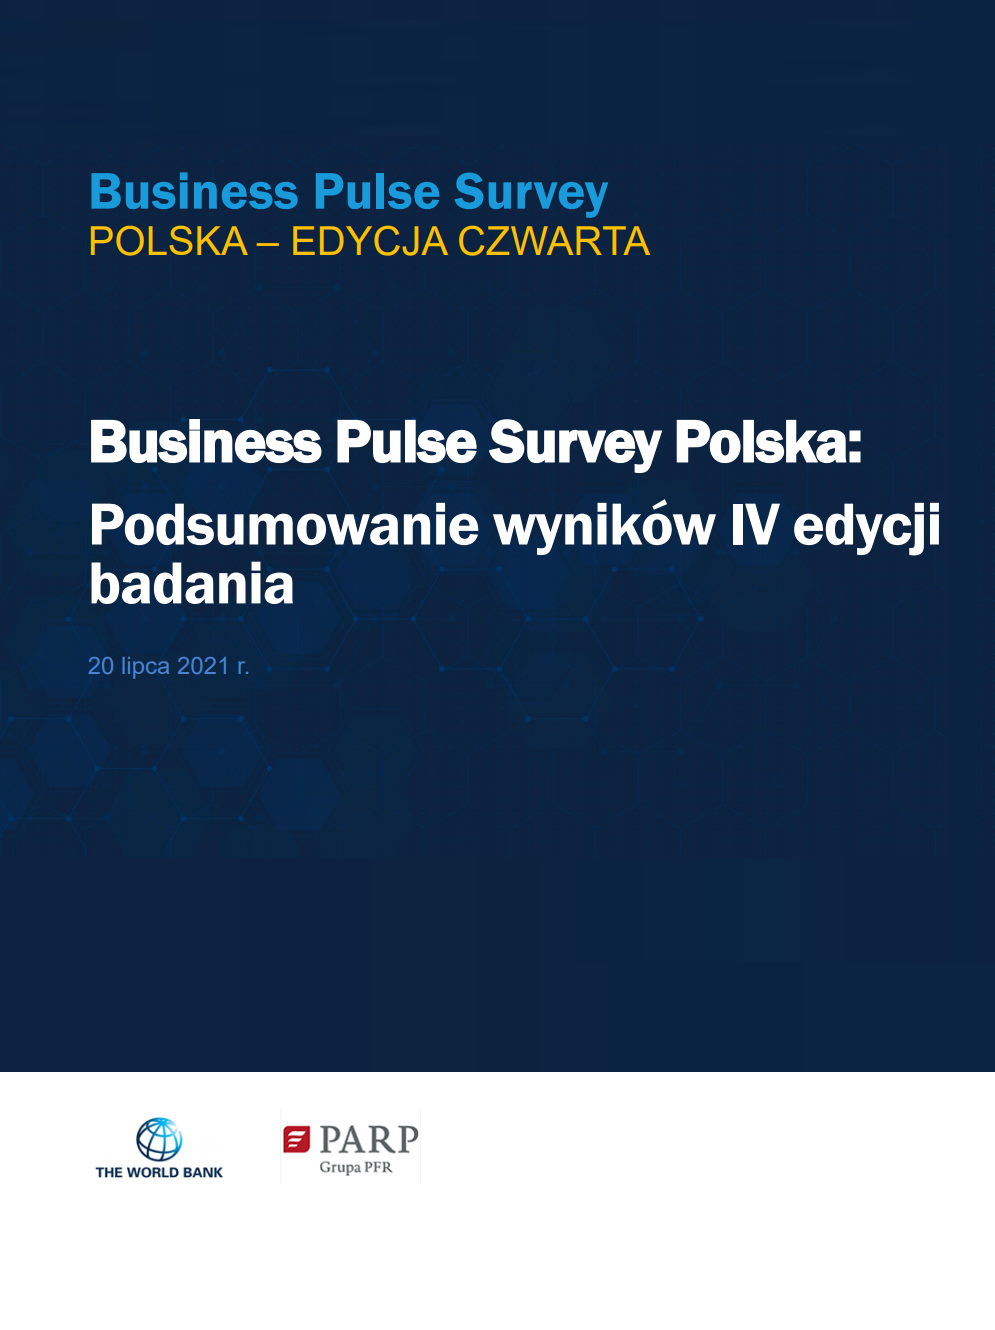 Business Pulse Survey Polska: Podsumowanie wyników IV edycji badania